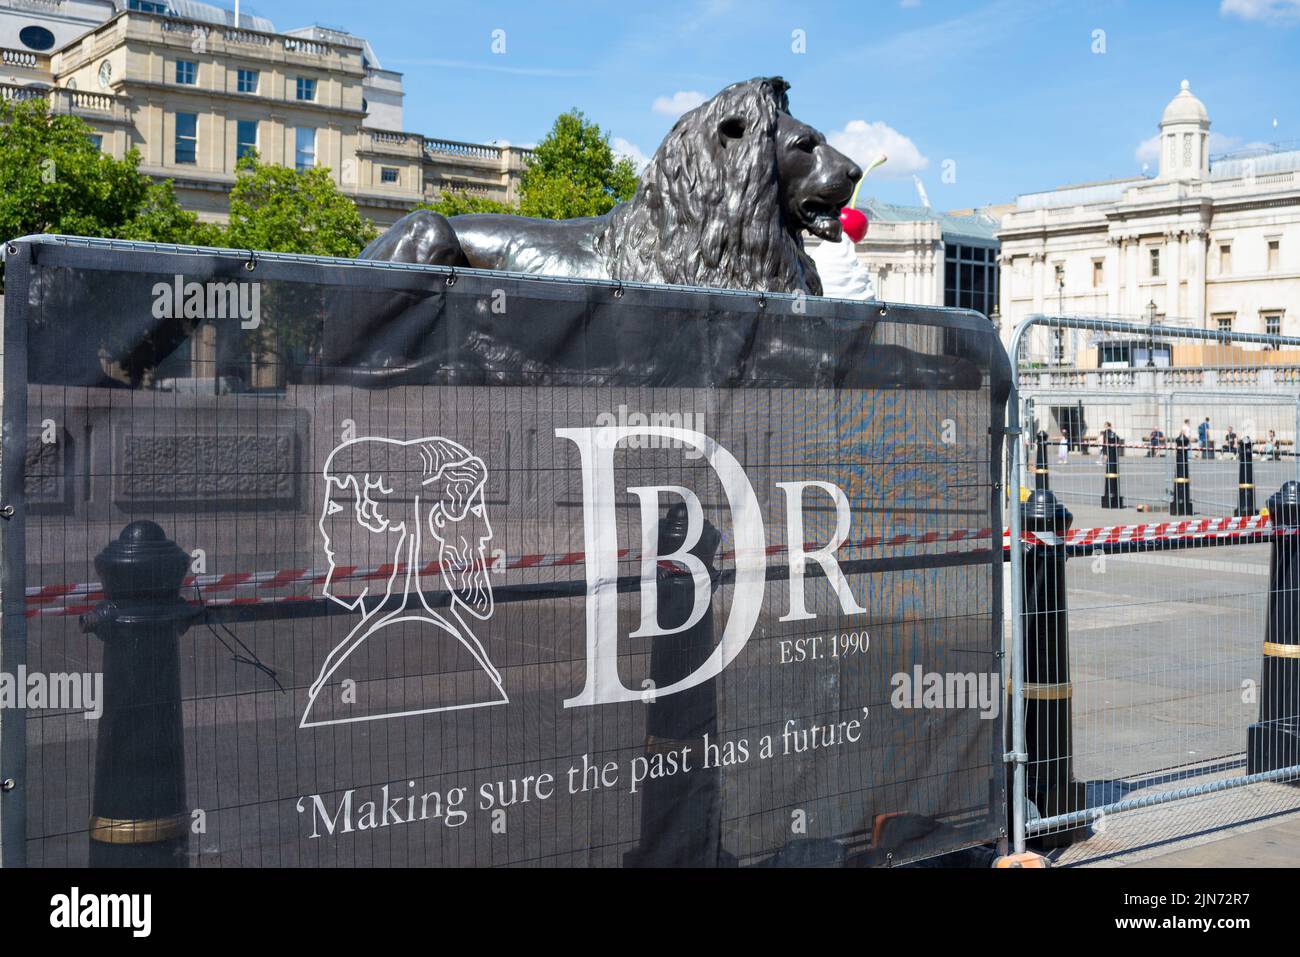 DBR Limited, panneau d'activité pour la conservation des bâtiments historiques, travaillant sur Nelson's Column, Trafalgar Square, Westminster, Londres, Royaume-Uni Banque D'Images